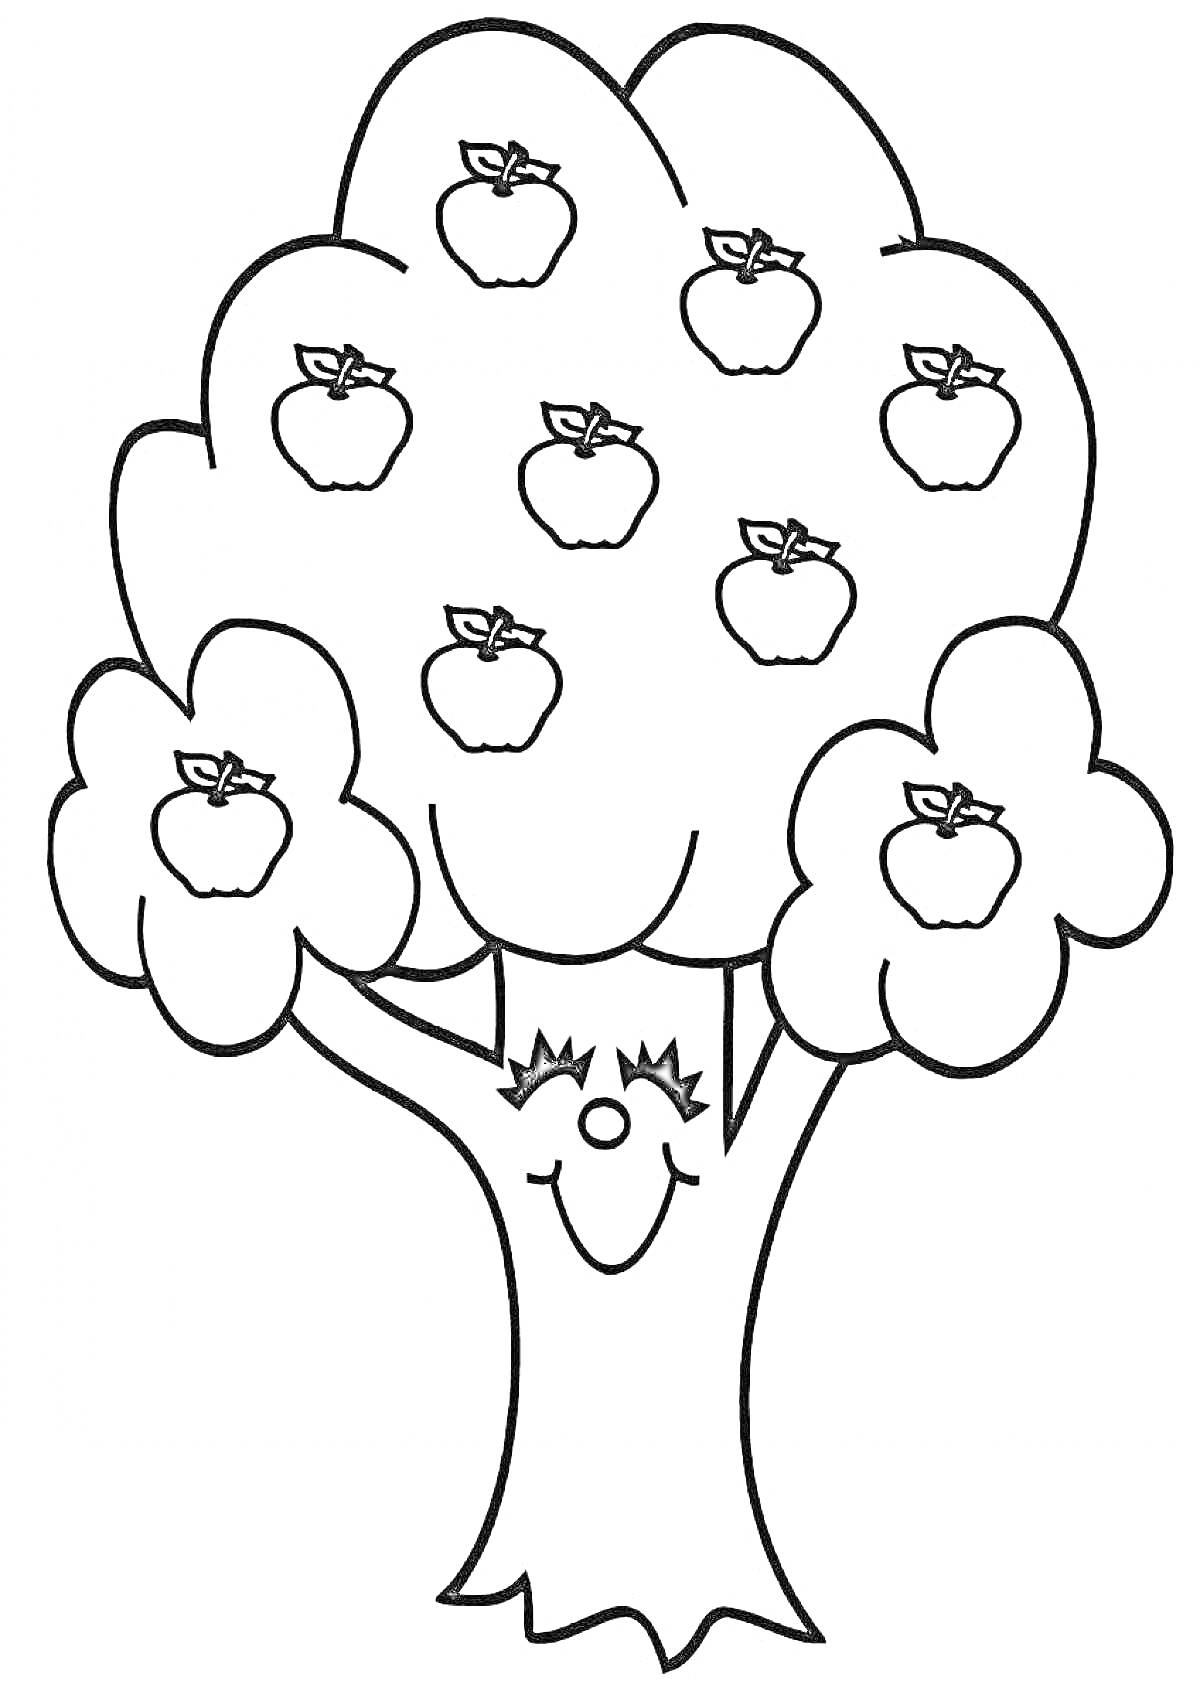 Раскраска Яблоня с яблоками и улыбающимся лицом на стволе